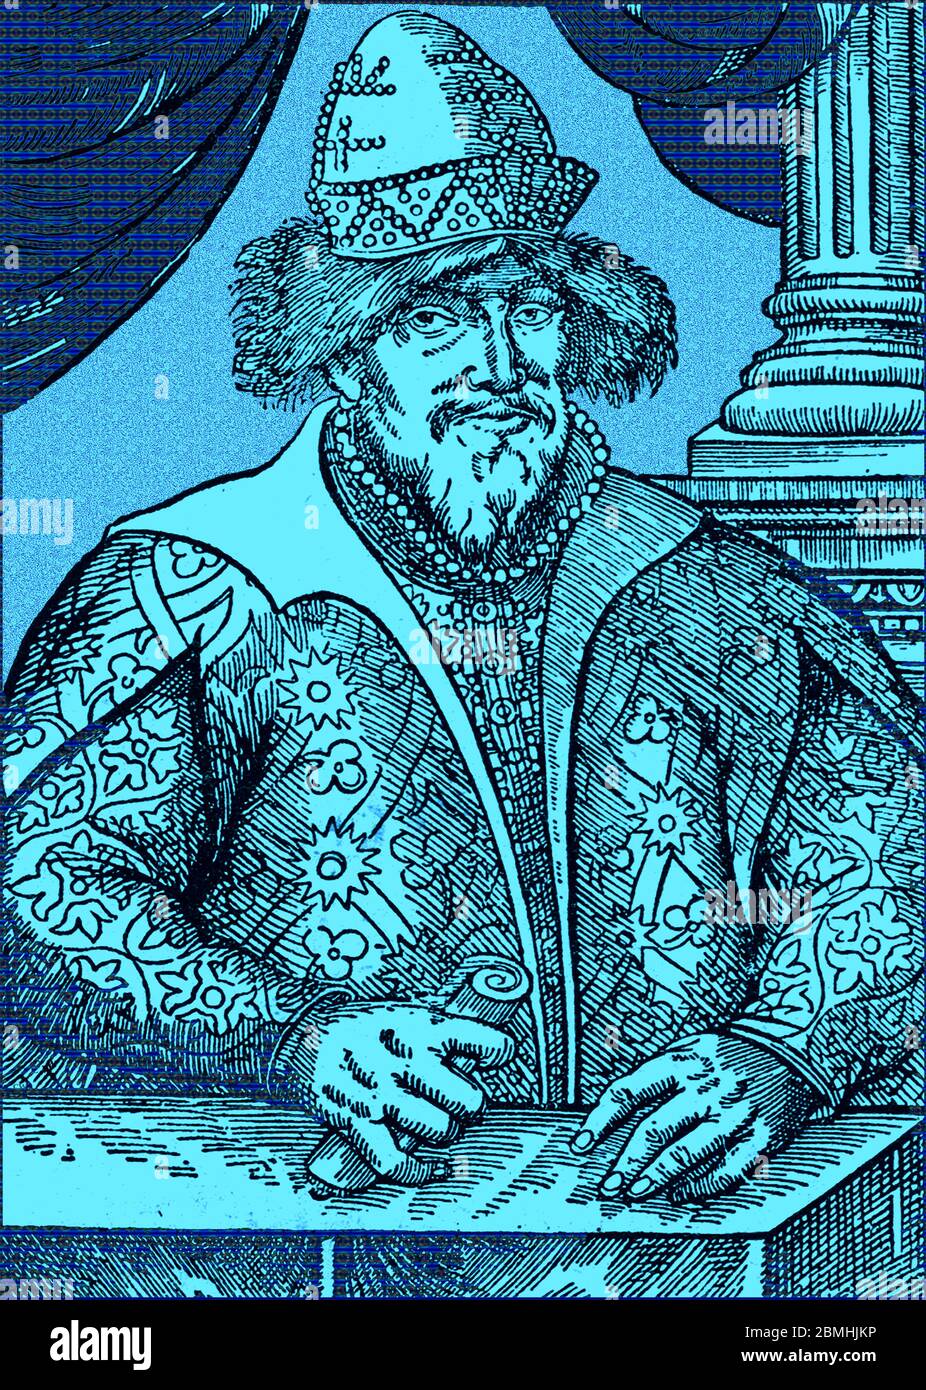 Un retrato de Iván el terrible ( Iván IV Vasilievich), que como Iván IV de Rusia se convirtió en zar a la edad de 17 años. Su temible reputación estaba bien fundada y aunque inteligente y devoto, también estaba sujeto a brotes de paranoia con ragos, y brotes episódicos de inestabilidad mental que aumentaron a medida que crecía. Foto de stock